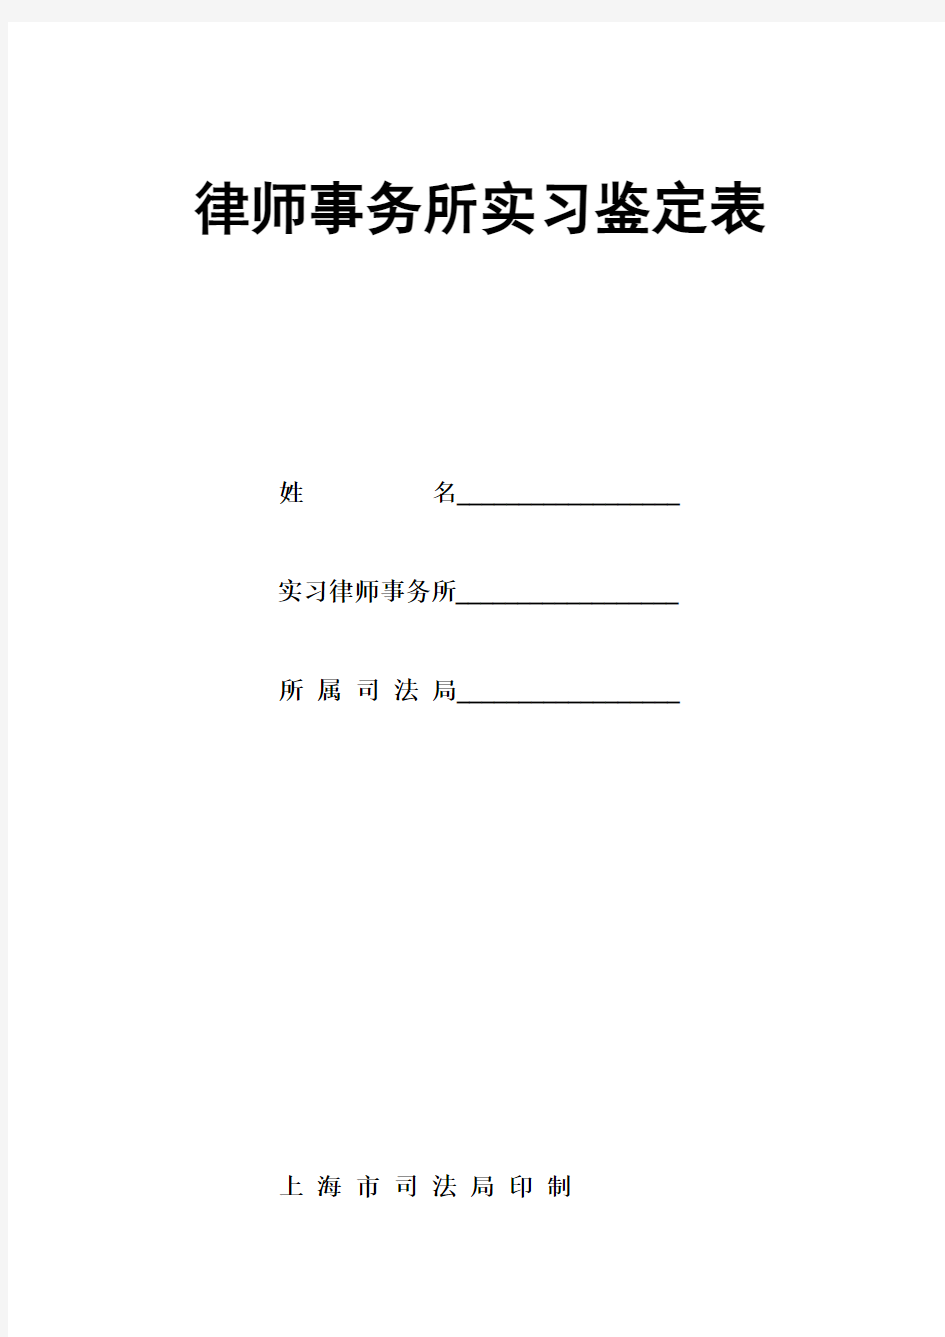 上海市律师事务所实习鉴定表